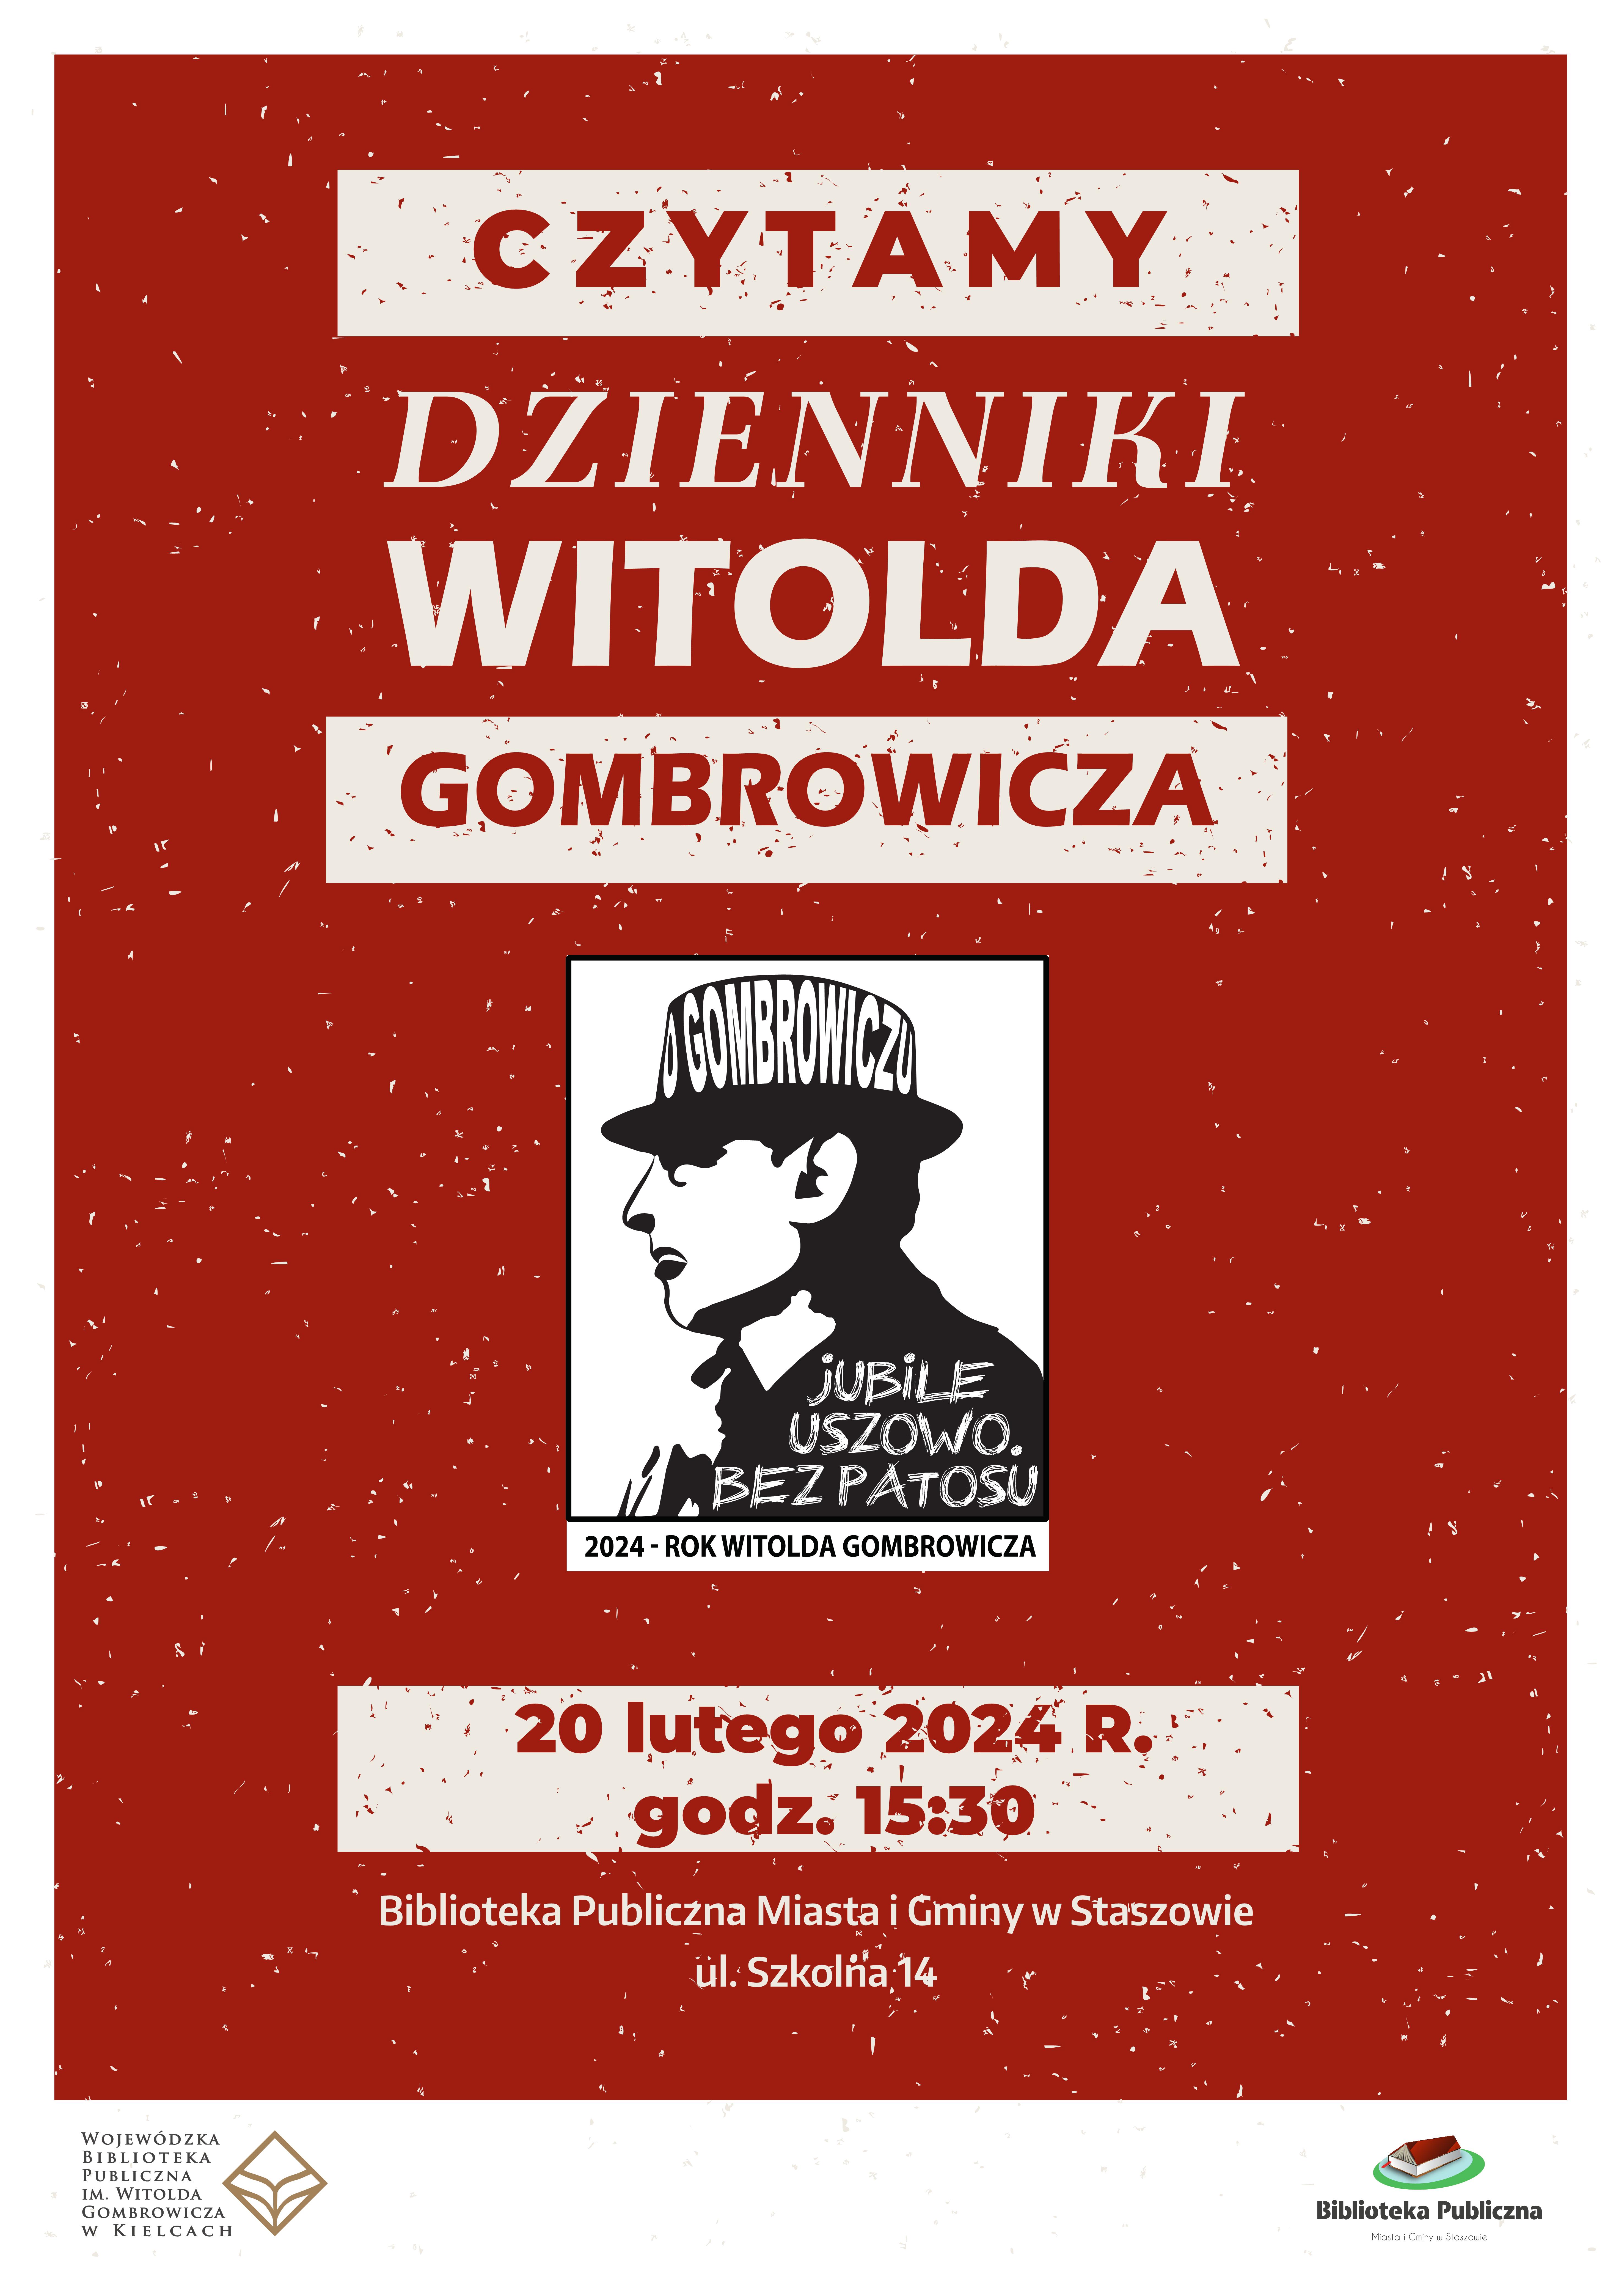 Czytamy „Dzienniki” Witolda Gombrowicza